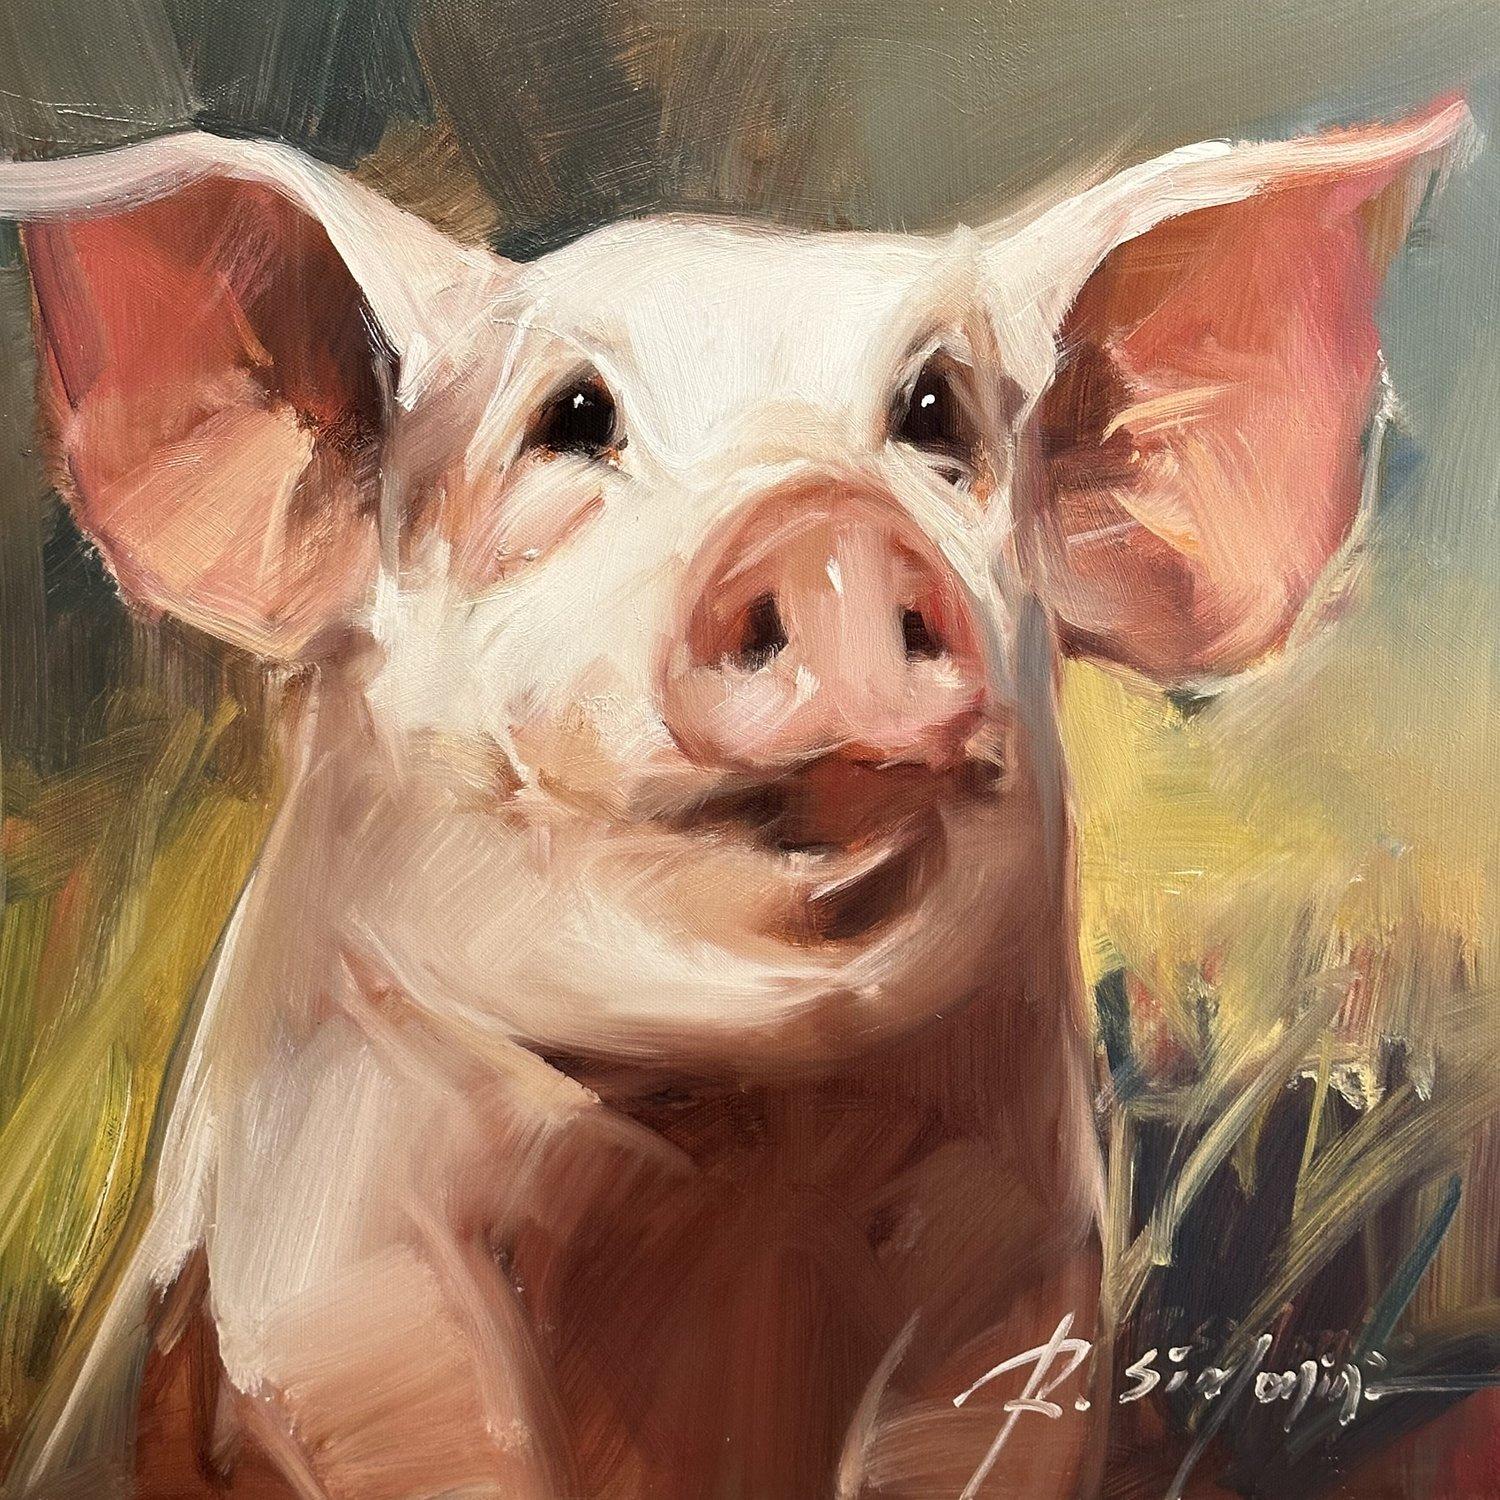 Dieses Gemälde des Künstlers Ray Simonini mit dem Titel "Miranda" ist ein 16x16 Bauernhof Tier Ölgemälde auf Leinwand mit einem Porträt von einem rosa Schwein vor einem bunten Hintergrund. 

Über den Künstler:
SIMONINI wurde 1981 in China geboren.